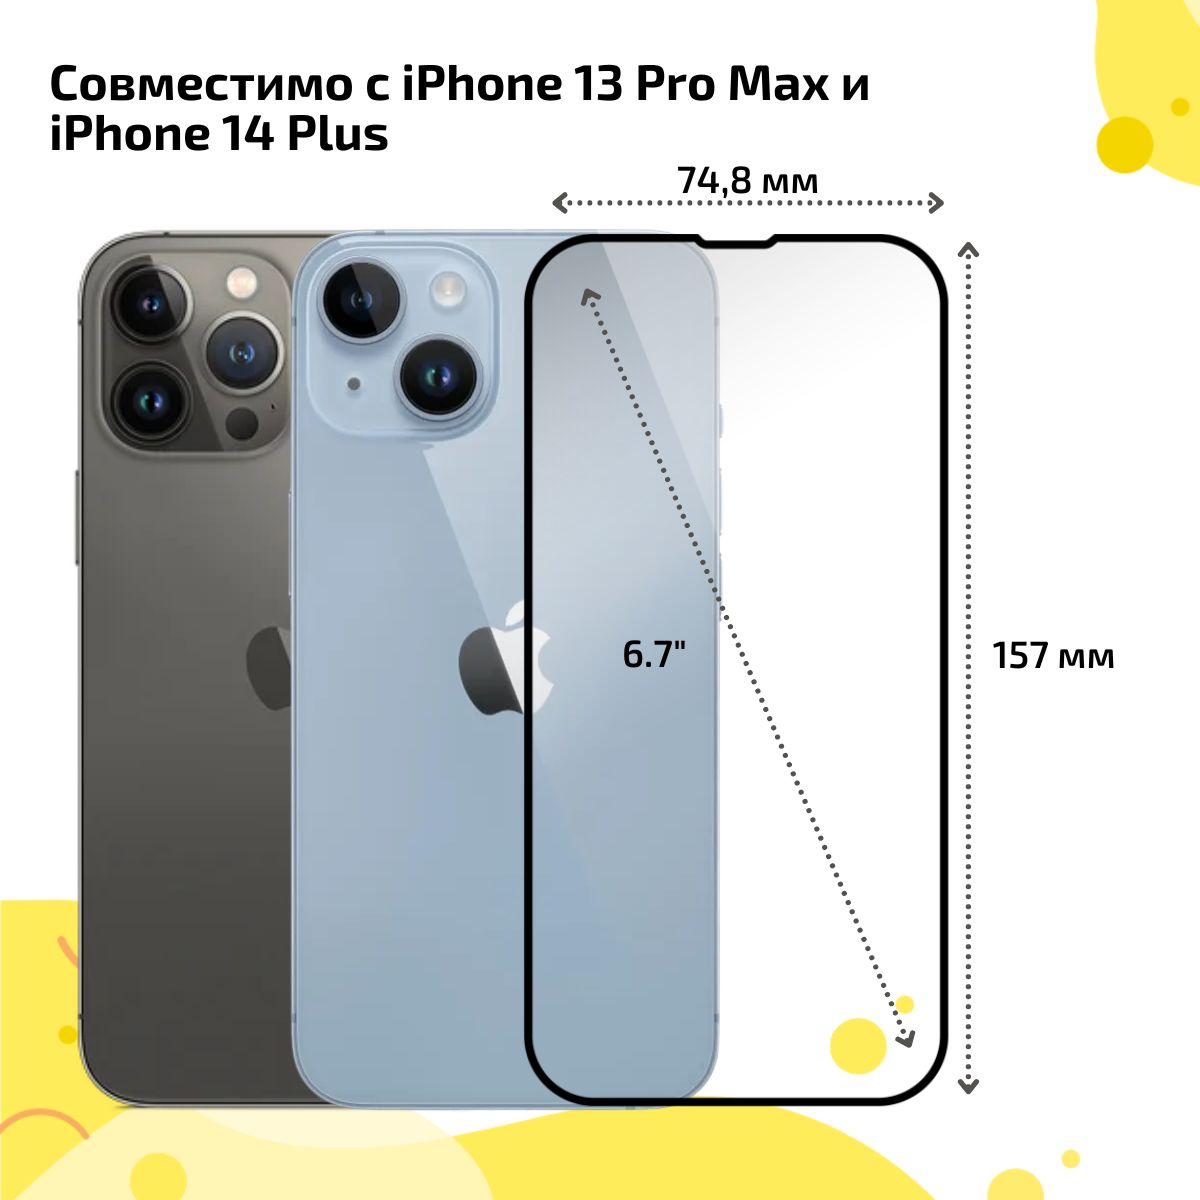 Iphone 13 Pro Max Mini. Iphone 14 Pro Max габариты. Iphone 13 Pro Max PITERGSM.